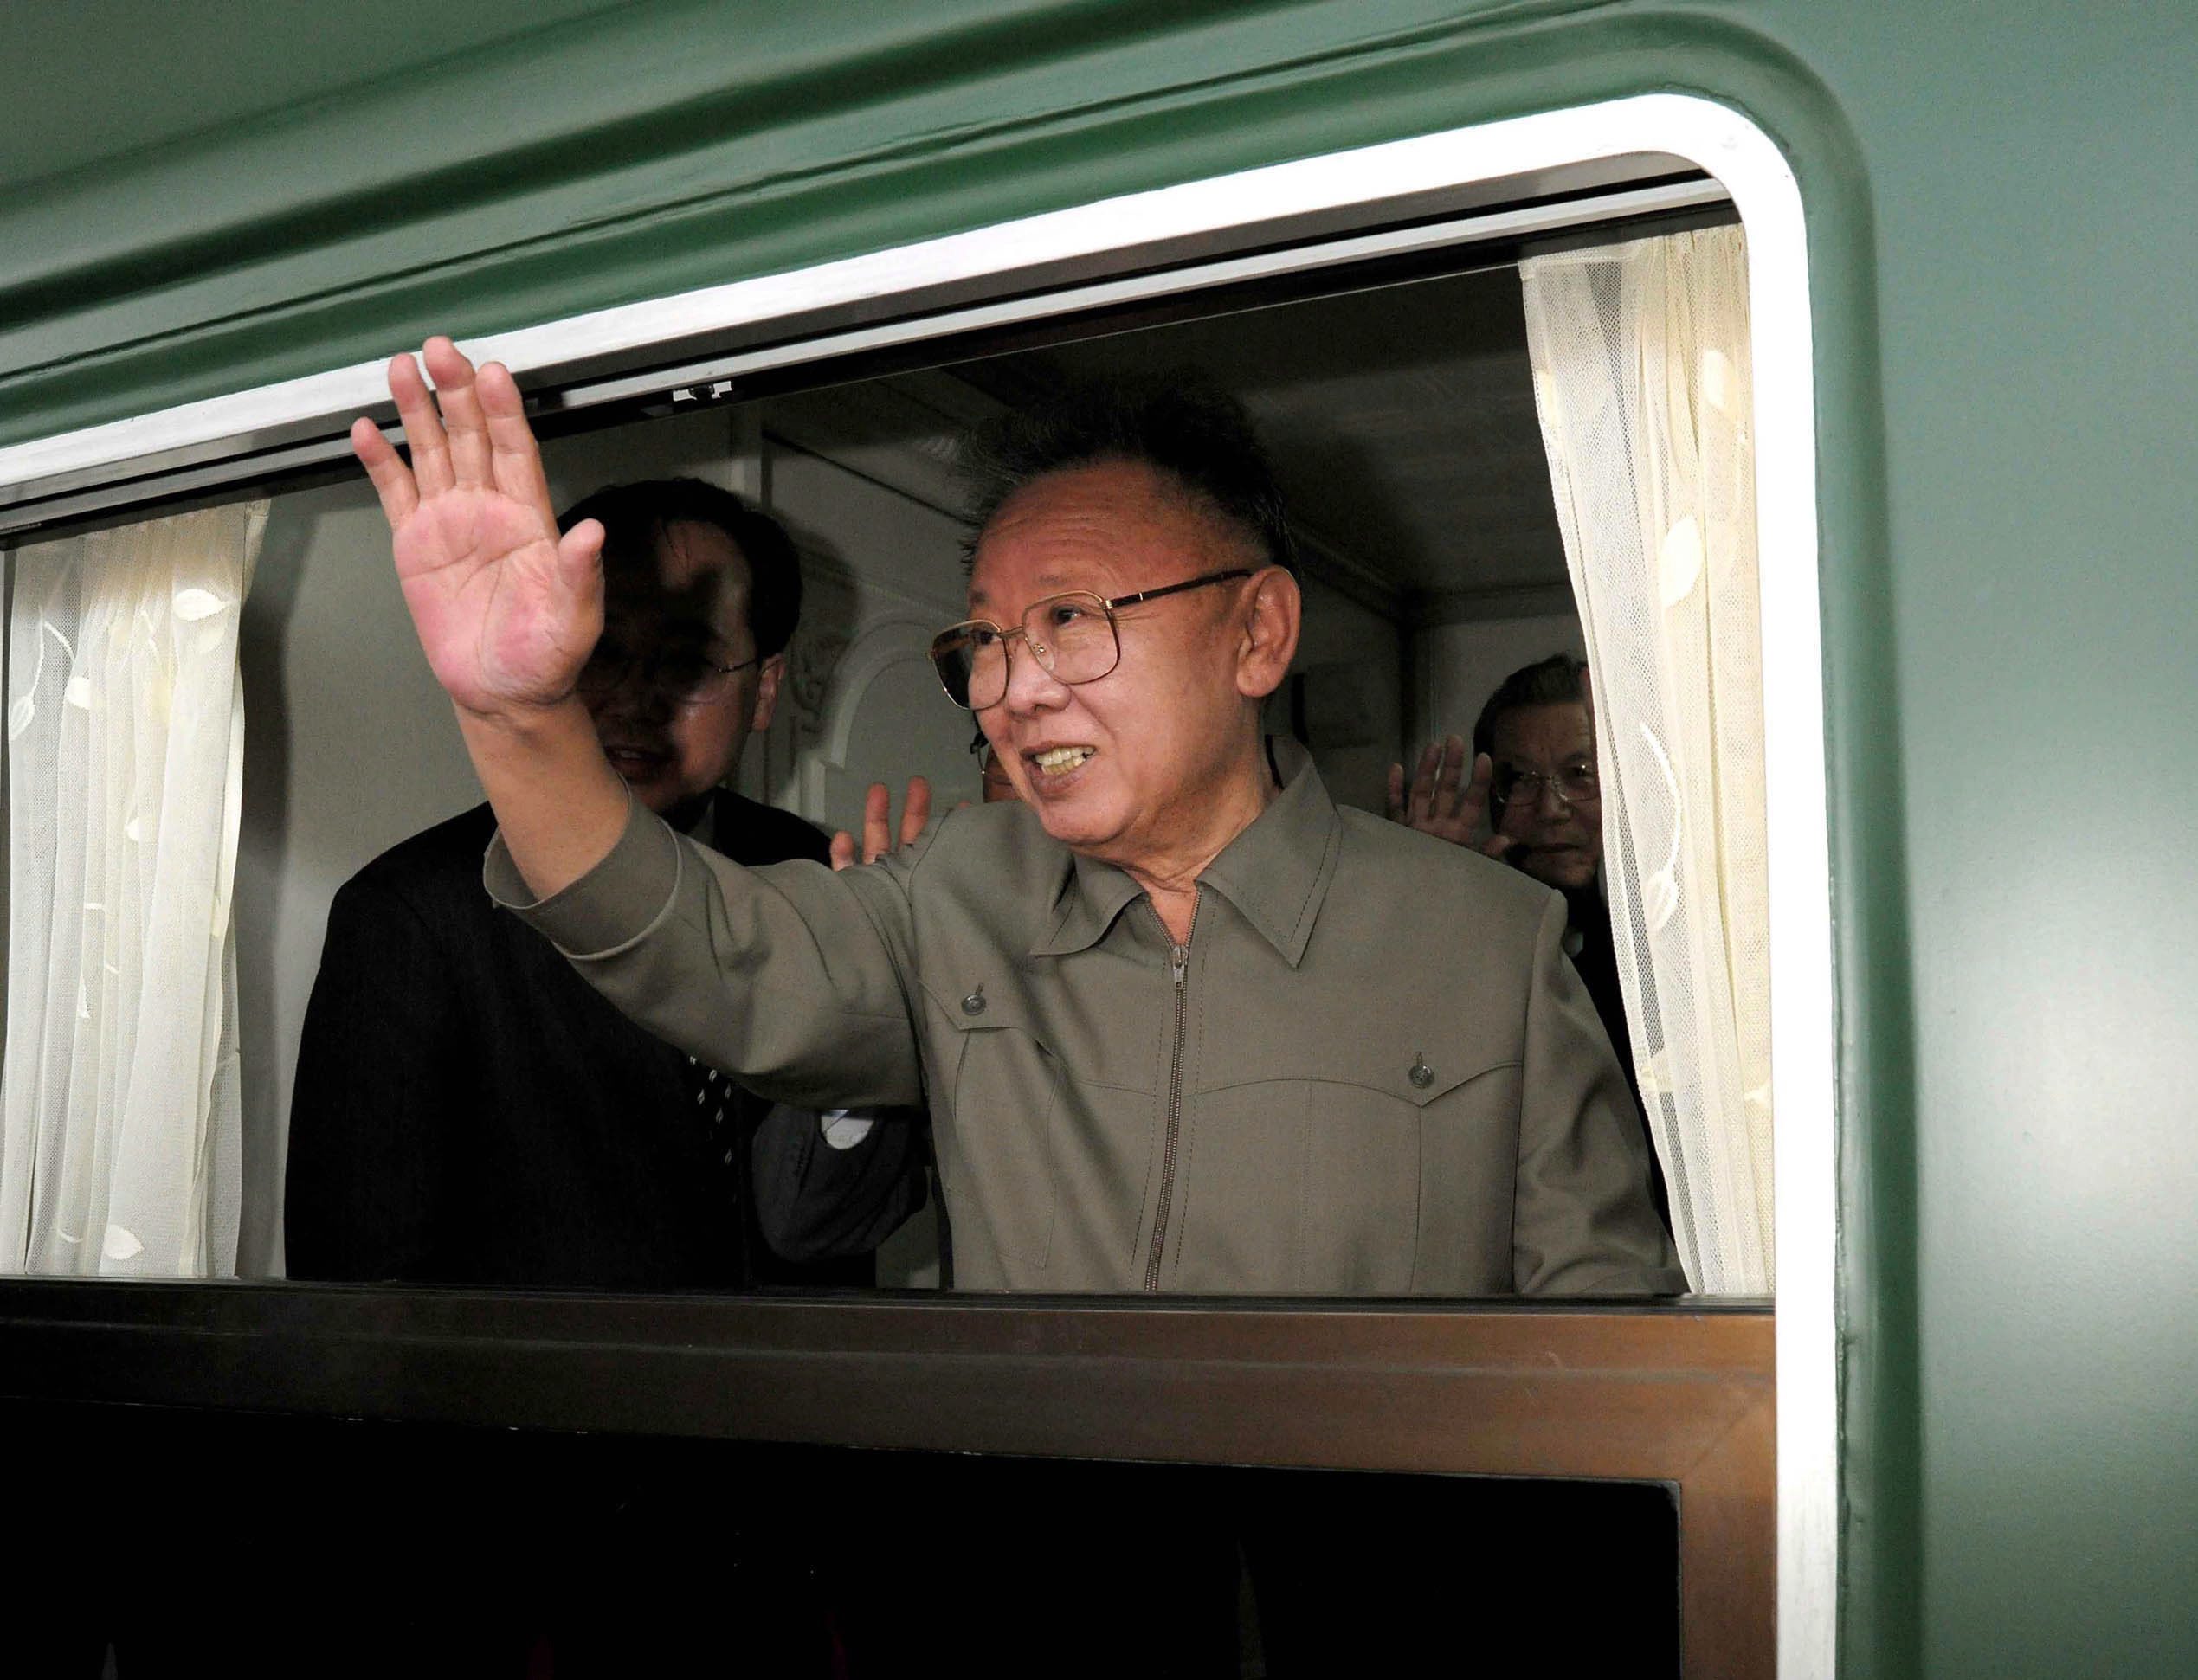 Севернокорейският лидер Ким Чен-ир е починал, докато пътувал във влак